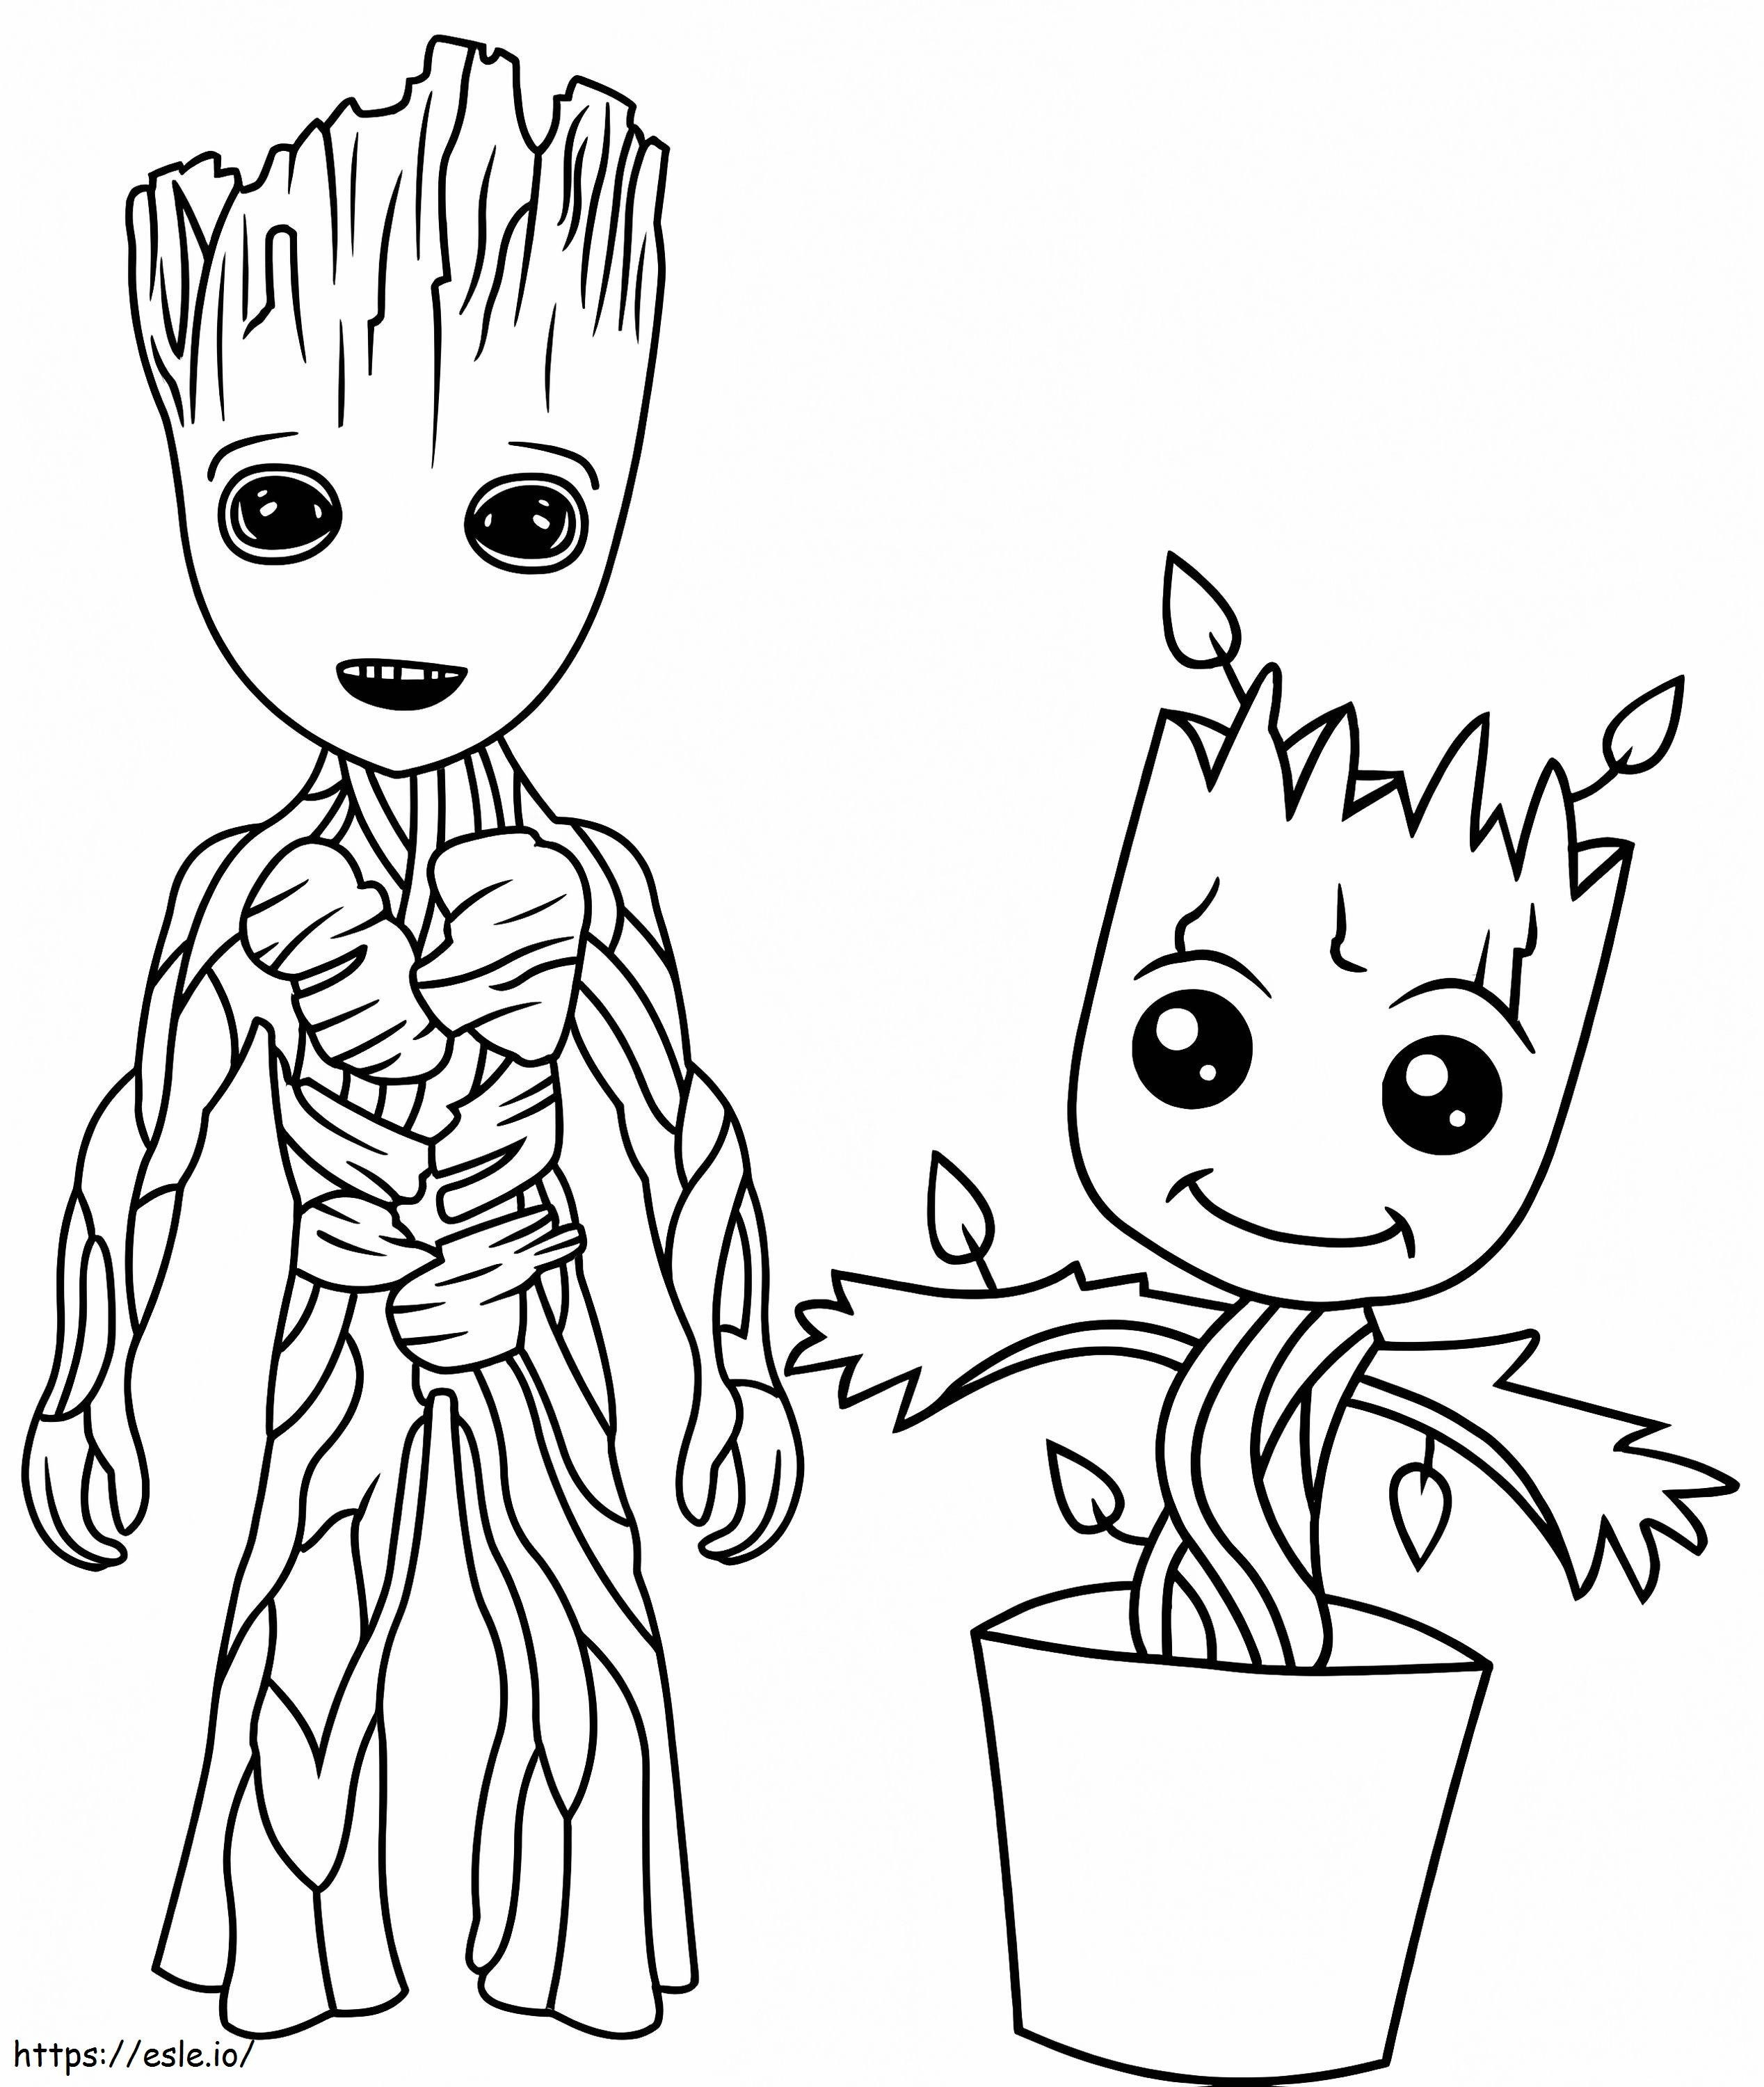 Küçük Groot ve Vazoda Küçük Groot boyama